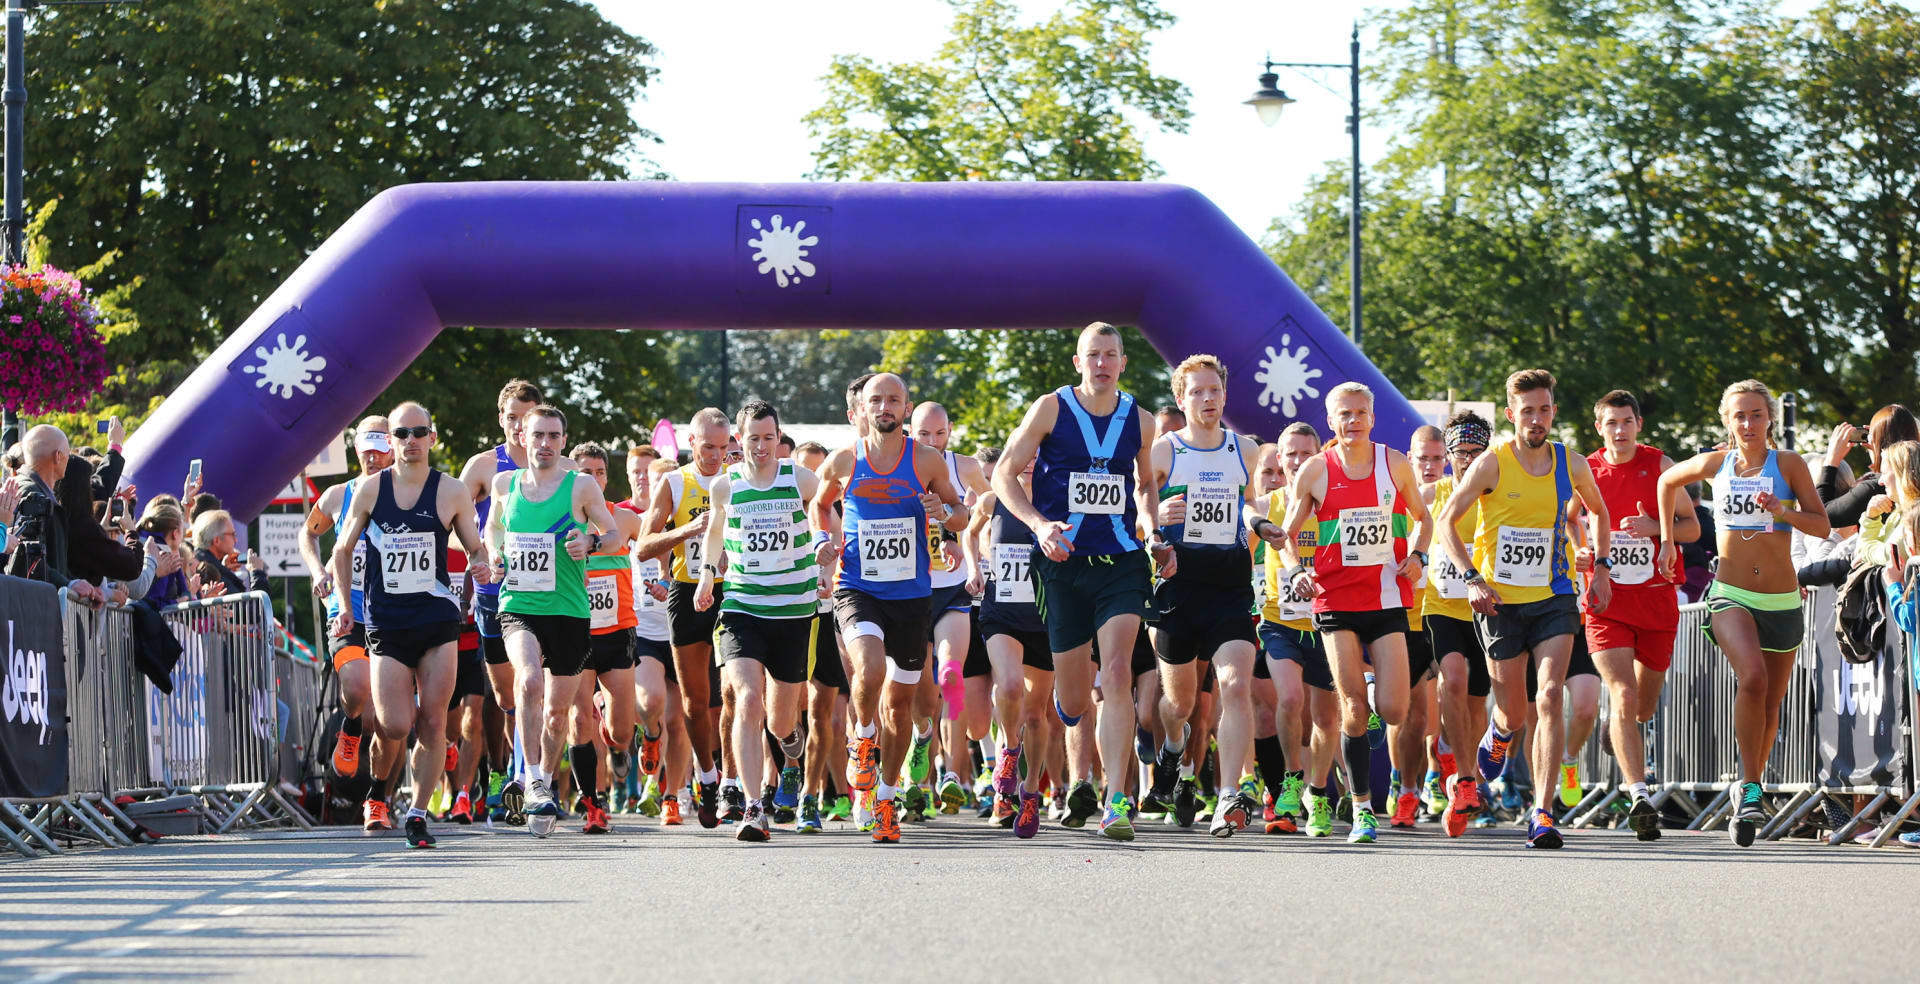 Maidenhead Half Marathon, Sunday 4th September 2022, Windsor and Maidenhead, England, United Kingdom